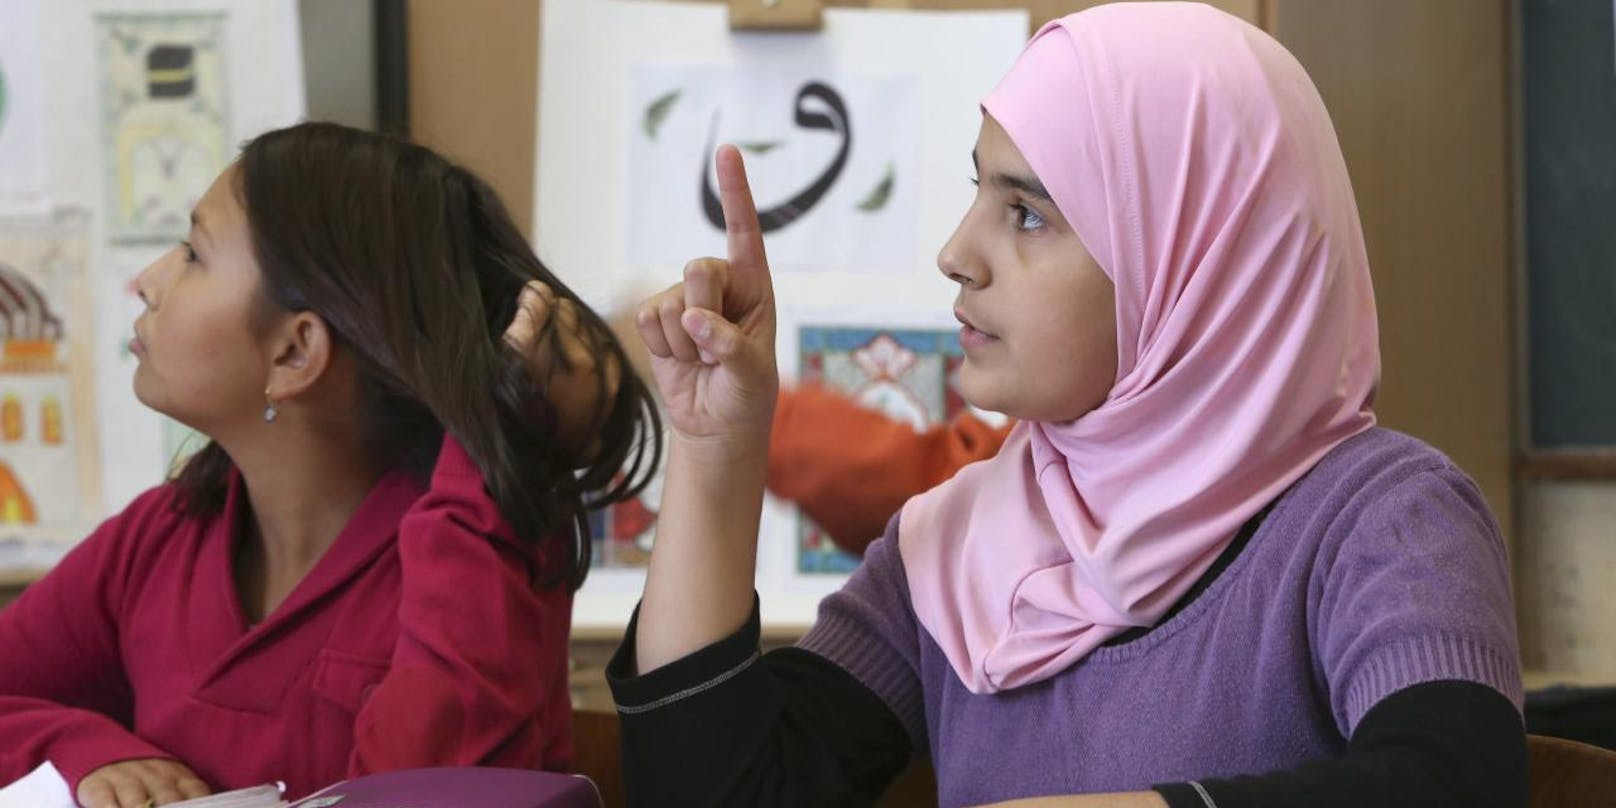 Die "Dokumentations- und Beratungsstelle Islamfeindlichkeit und antimuslimischer Rassismus" fordert die&nbsp;Aufhebung des Kopftuchverbots an Schulen.